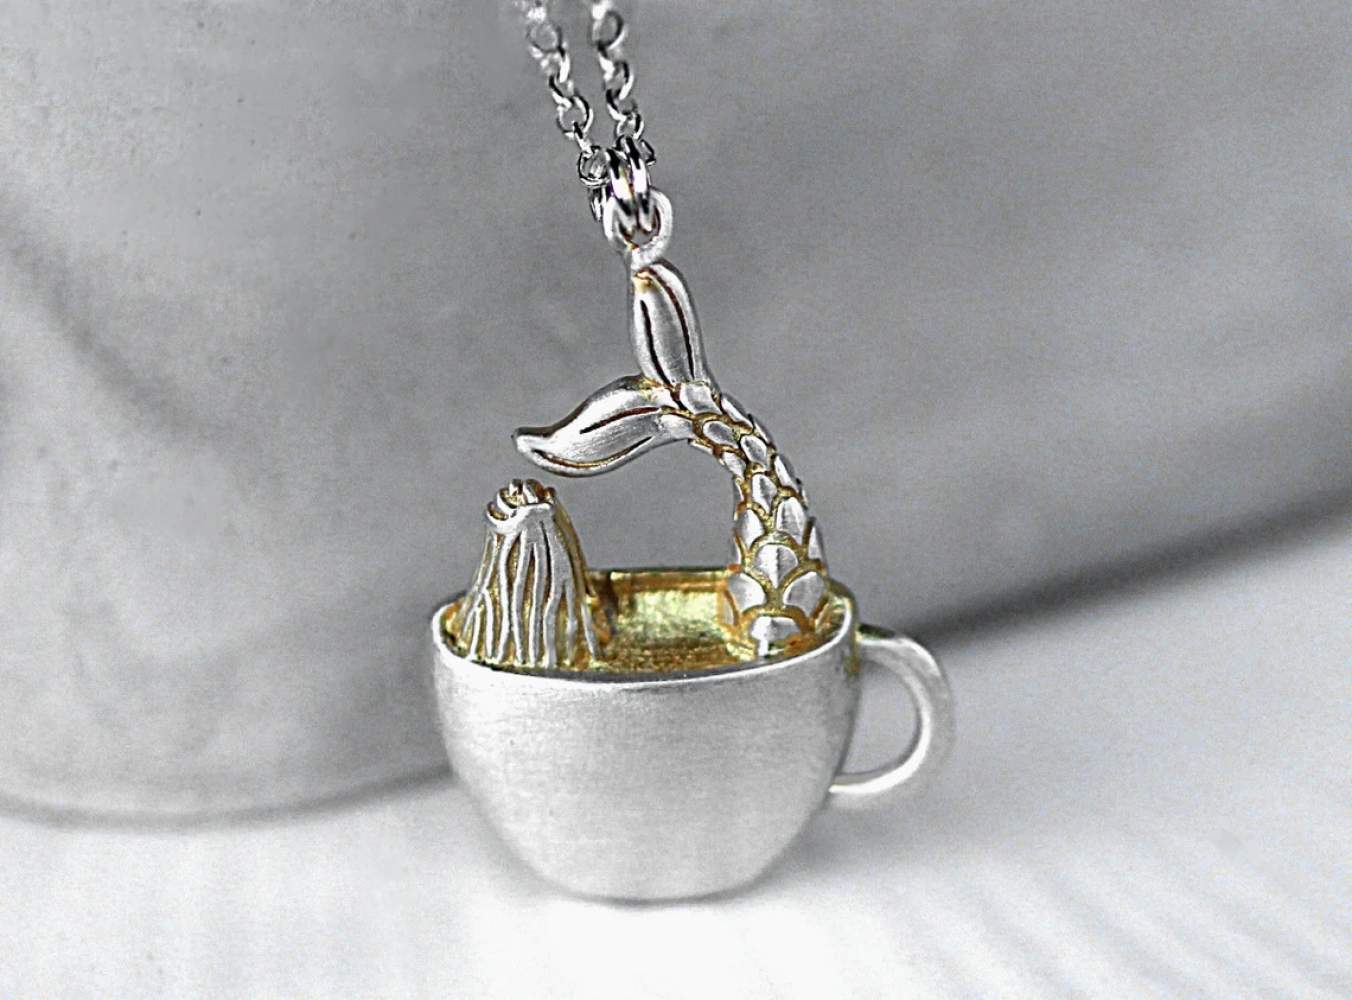 Meerjungfrau in Kaffeetasse. Phantasievolle Sterling Silber Halskette für sie